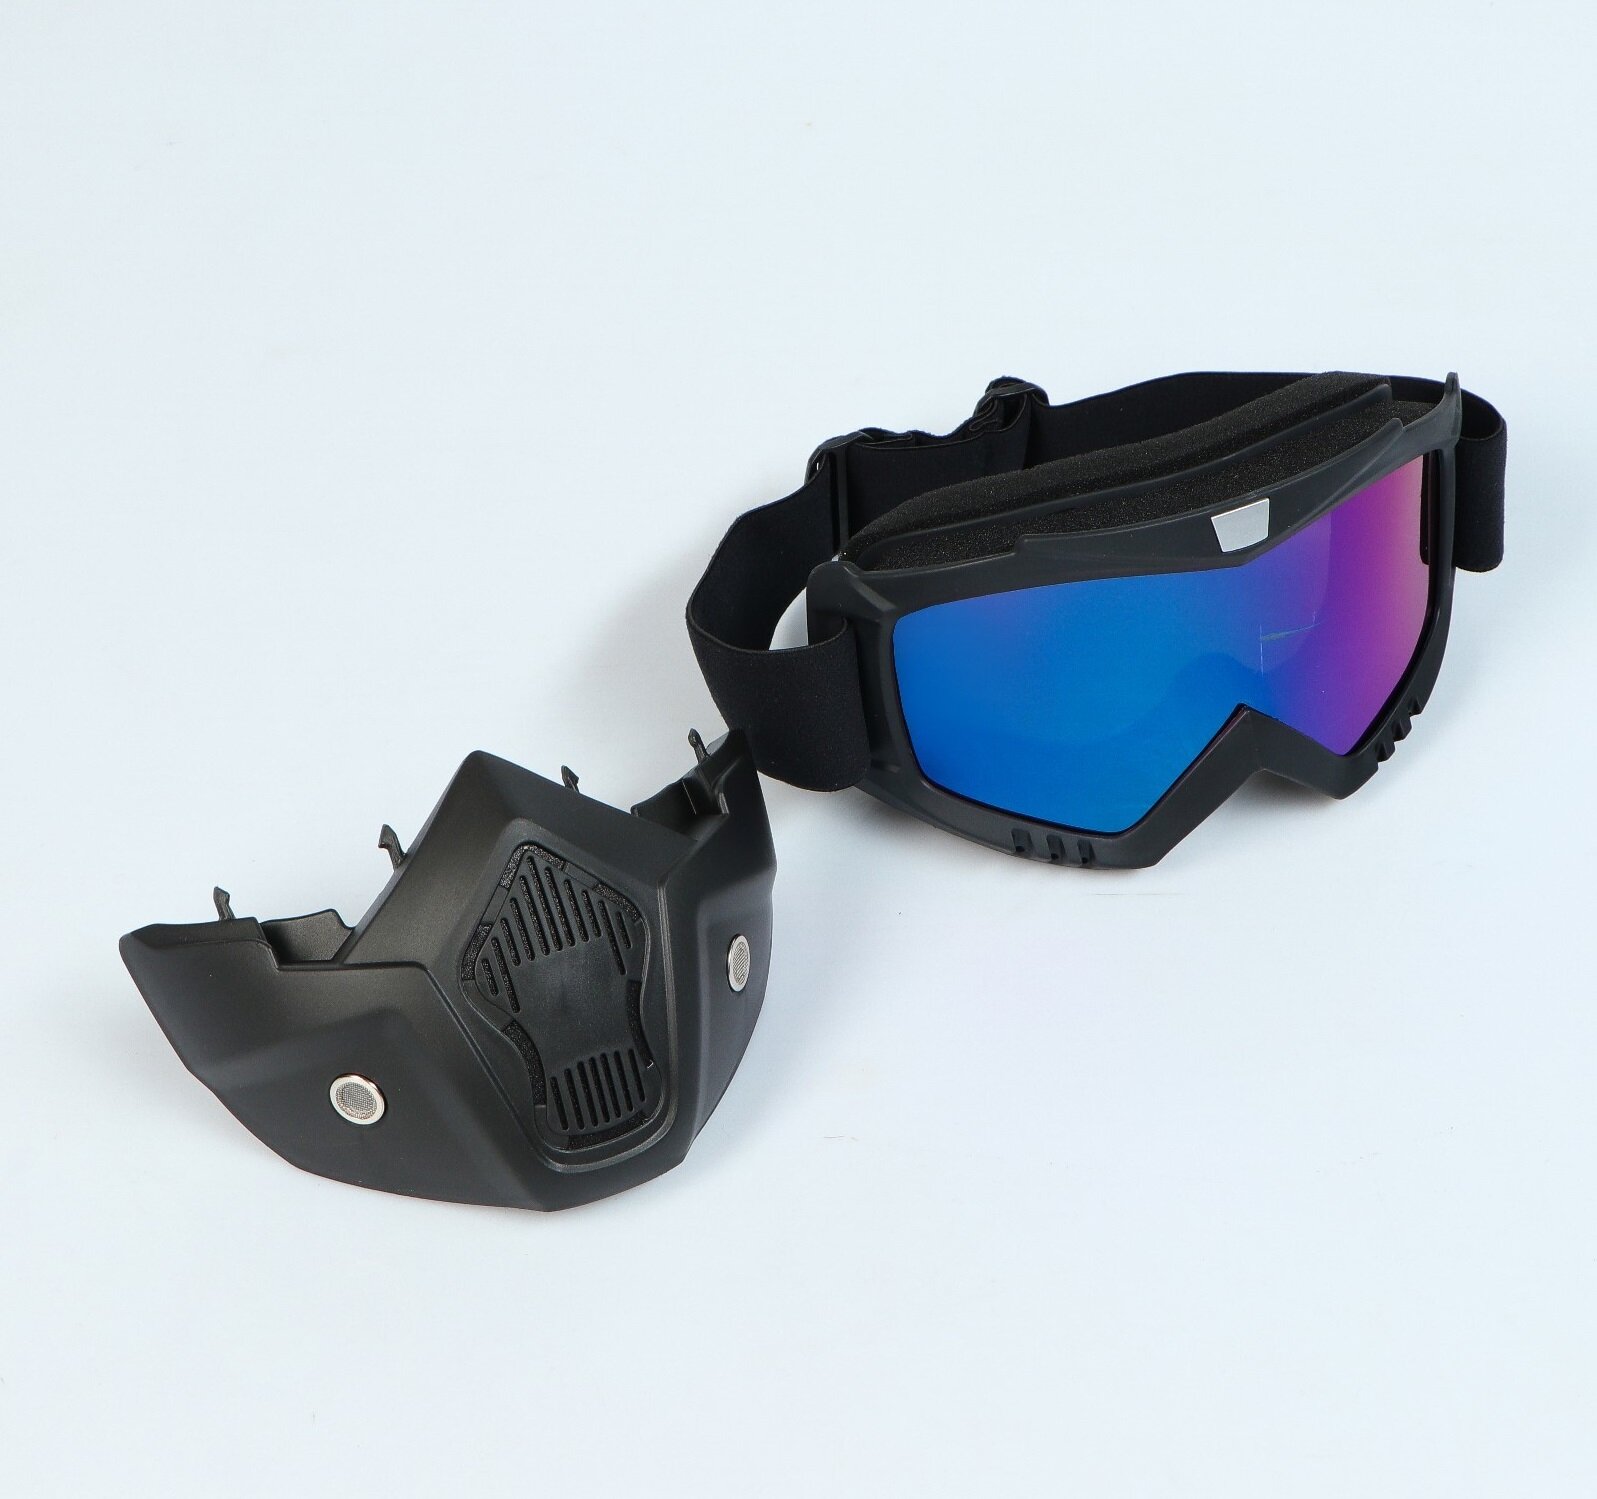 Очки-маска для езды на сноуборде лыжах снегоходе квадроцикле мототехнике разборные стекло "Хамелеон" черные